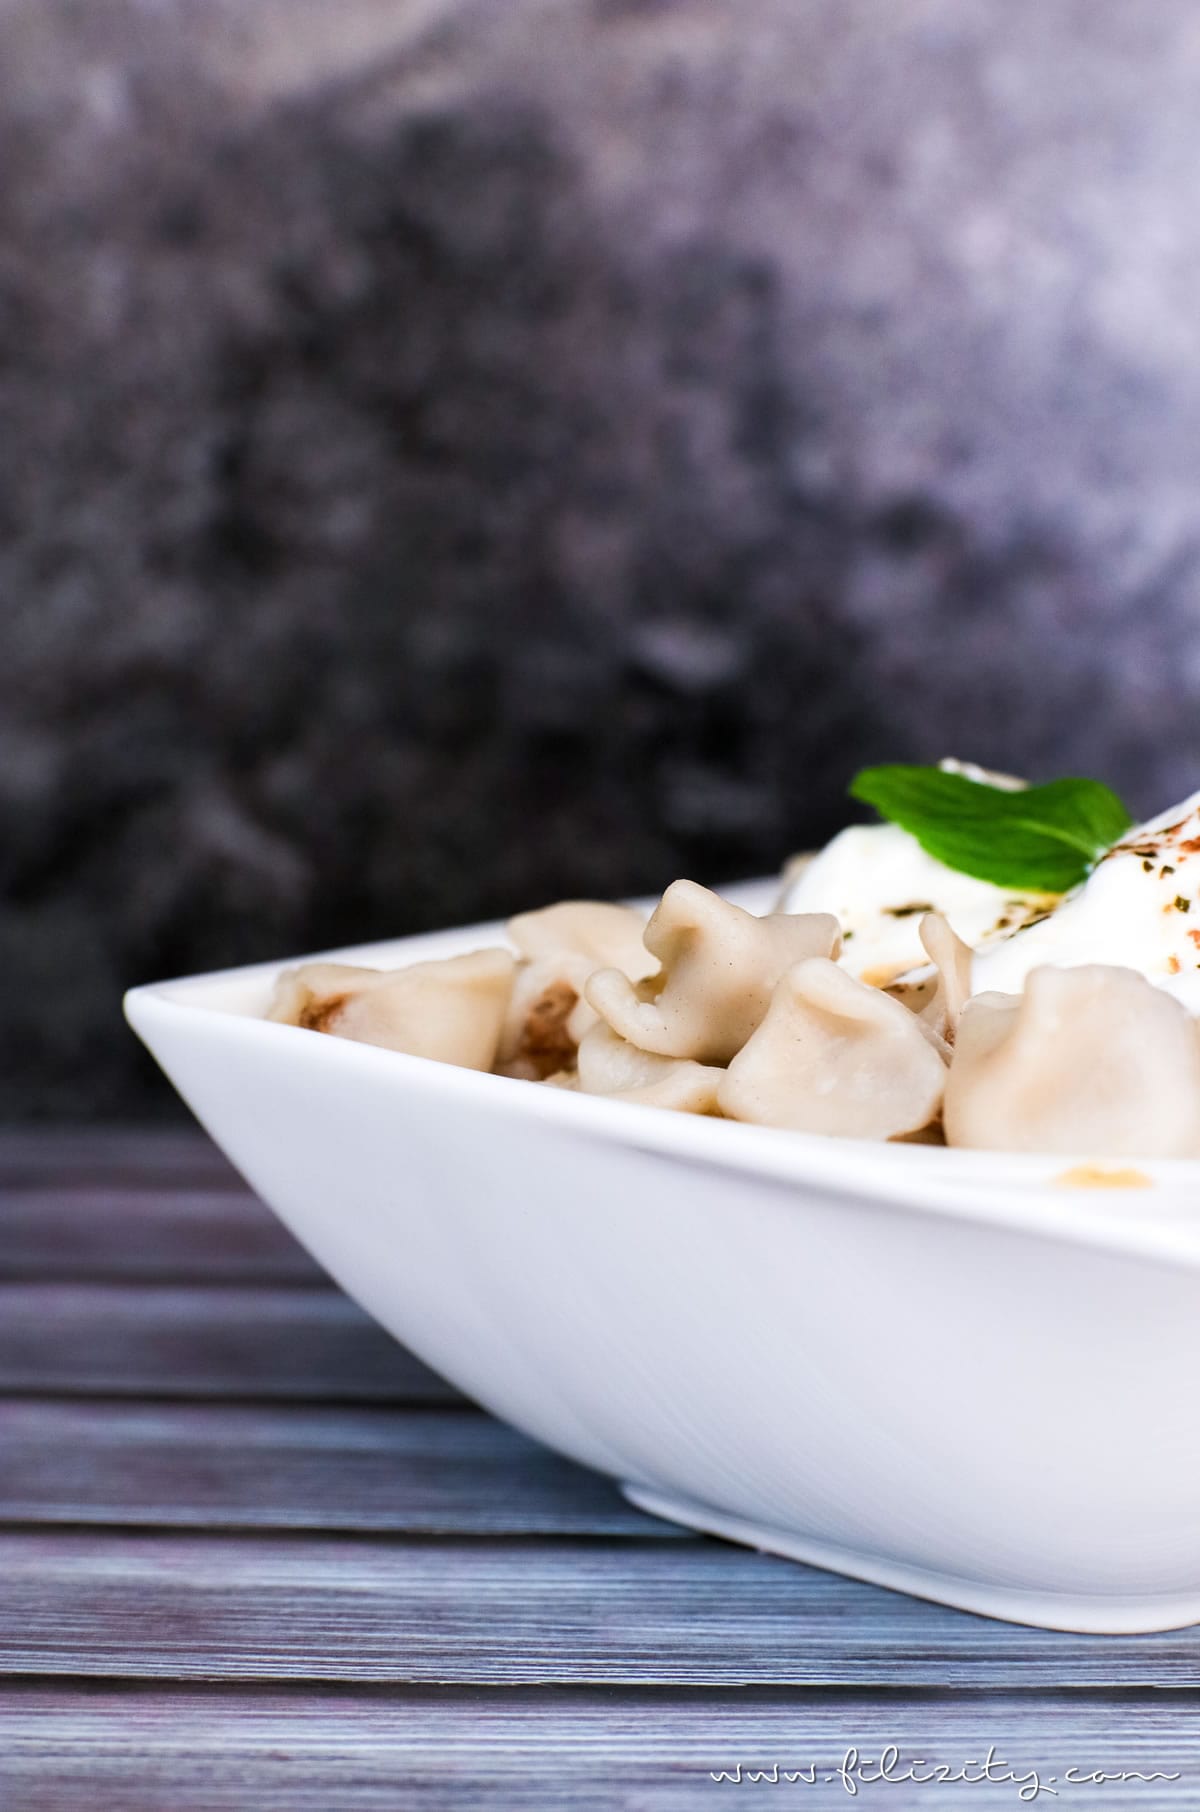 Rezept für Manti - Türkische Tortellini mit Knoblauch-Joghurtsoße und Paprikabutter | Filizity.com | Food-Blog aus dem Rheinland #tortellini #ravioli #manti